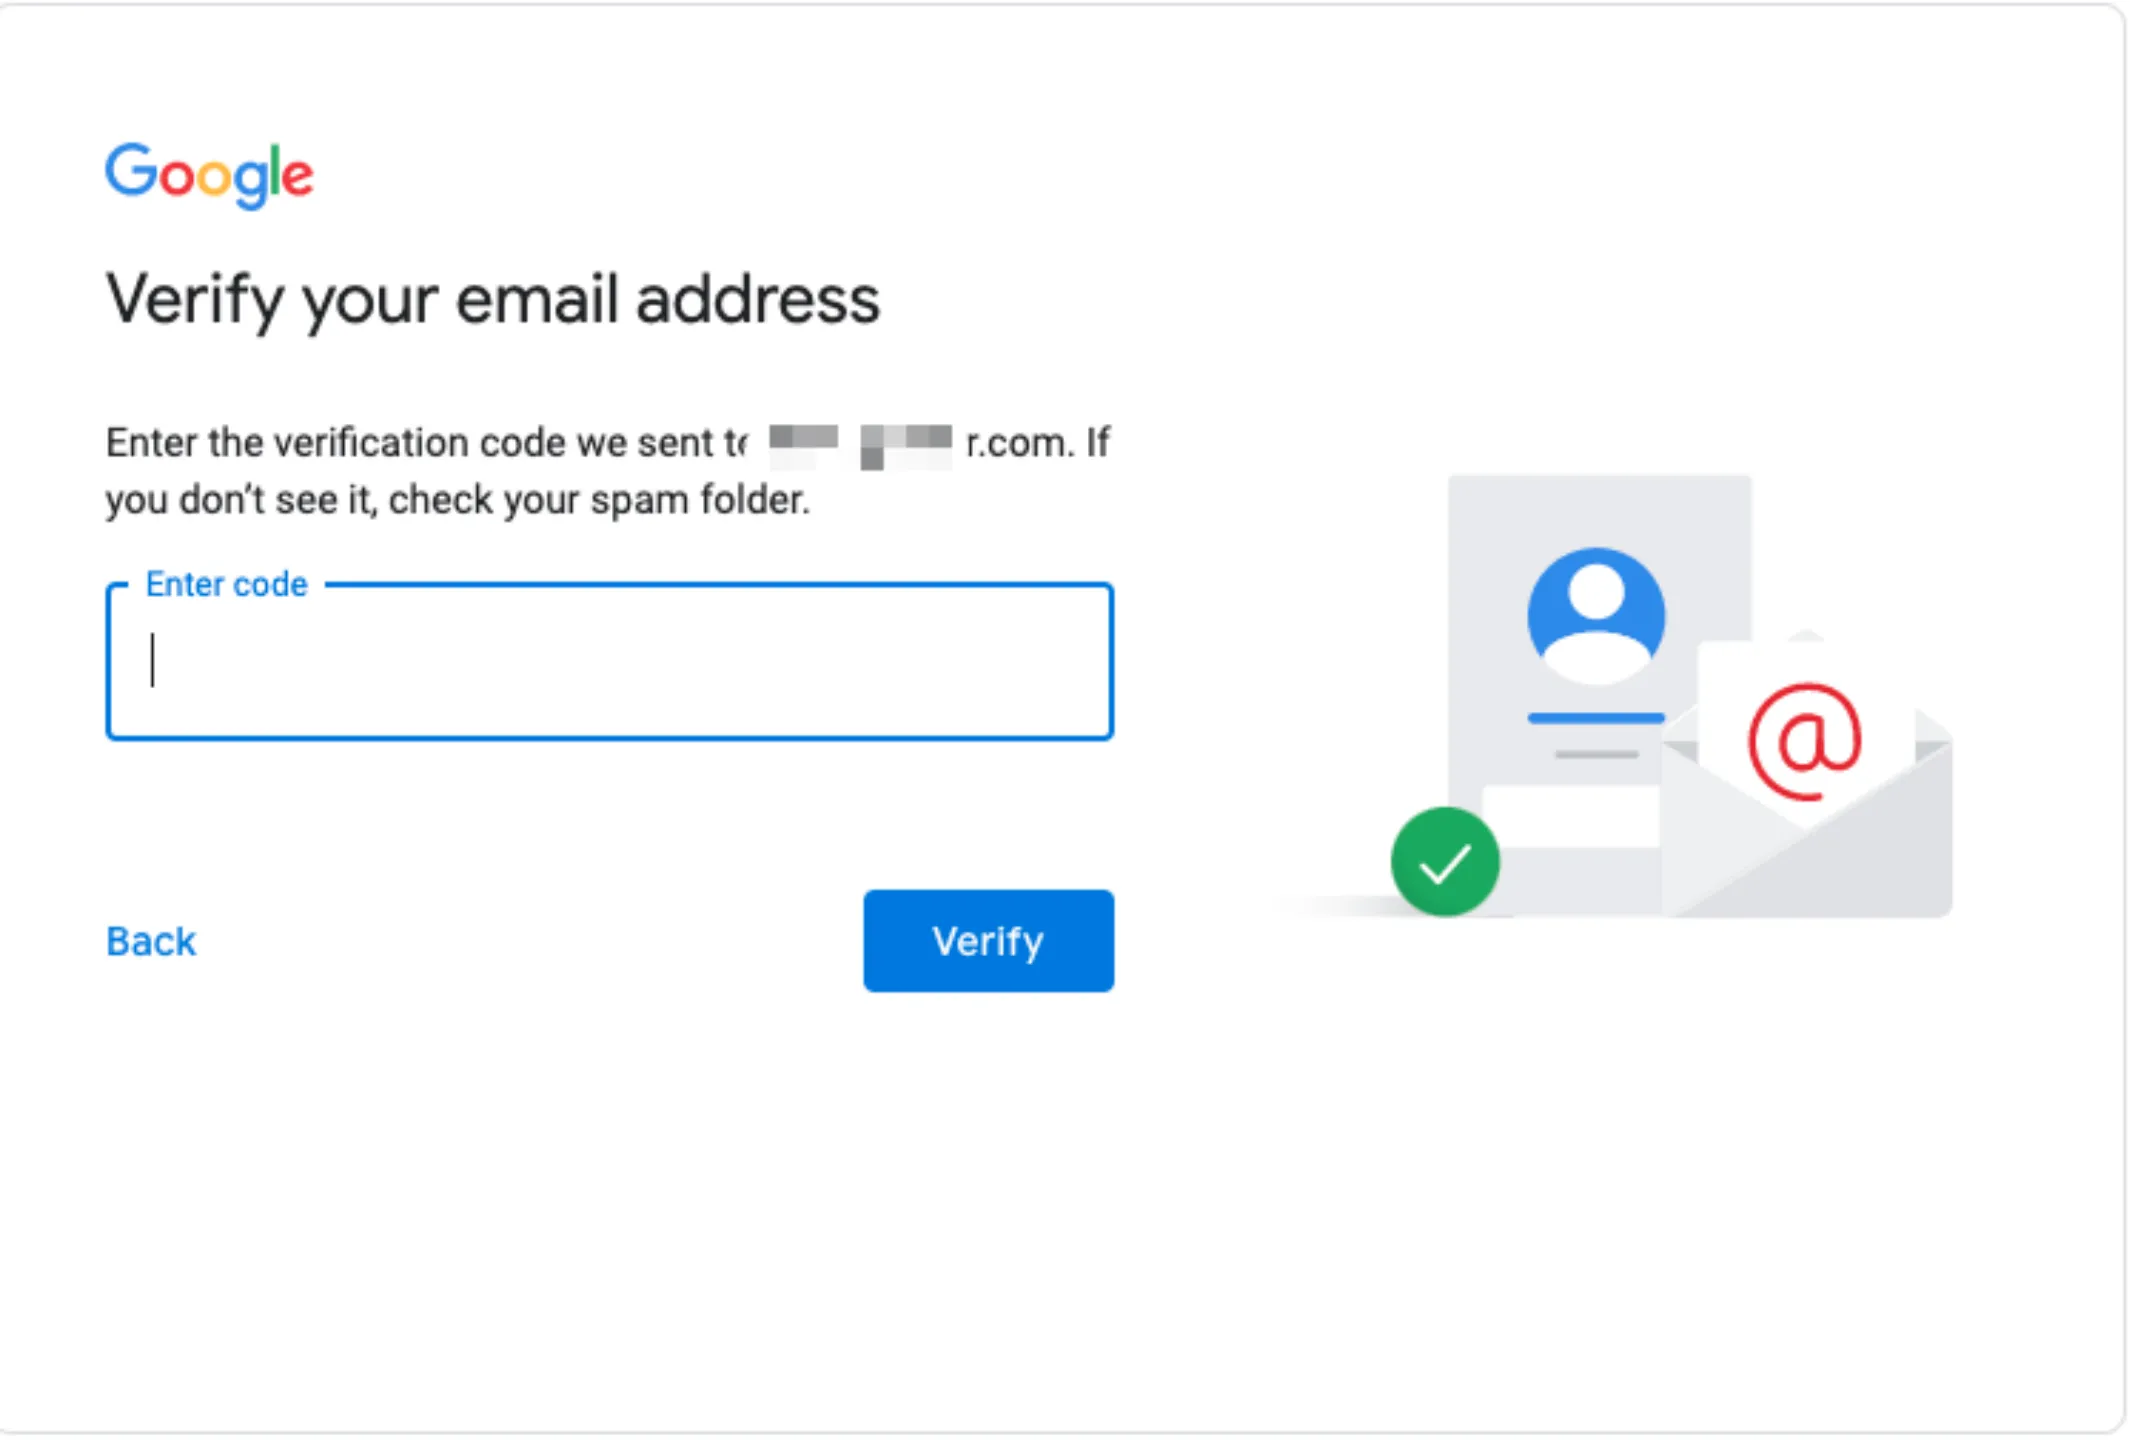 谷歌账号注册 验证邮件地址